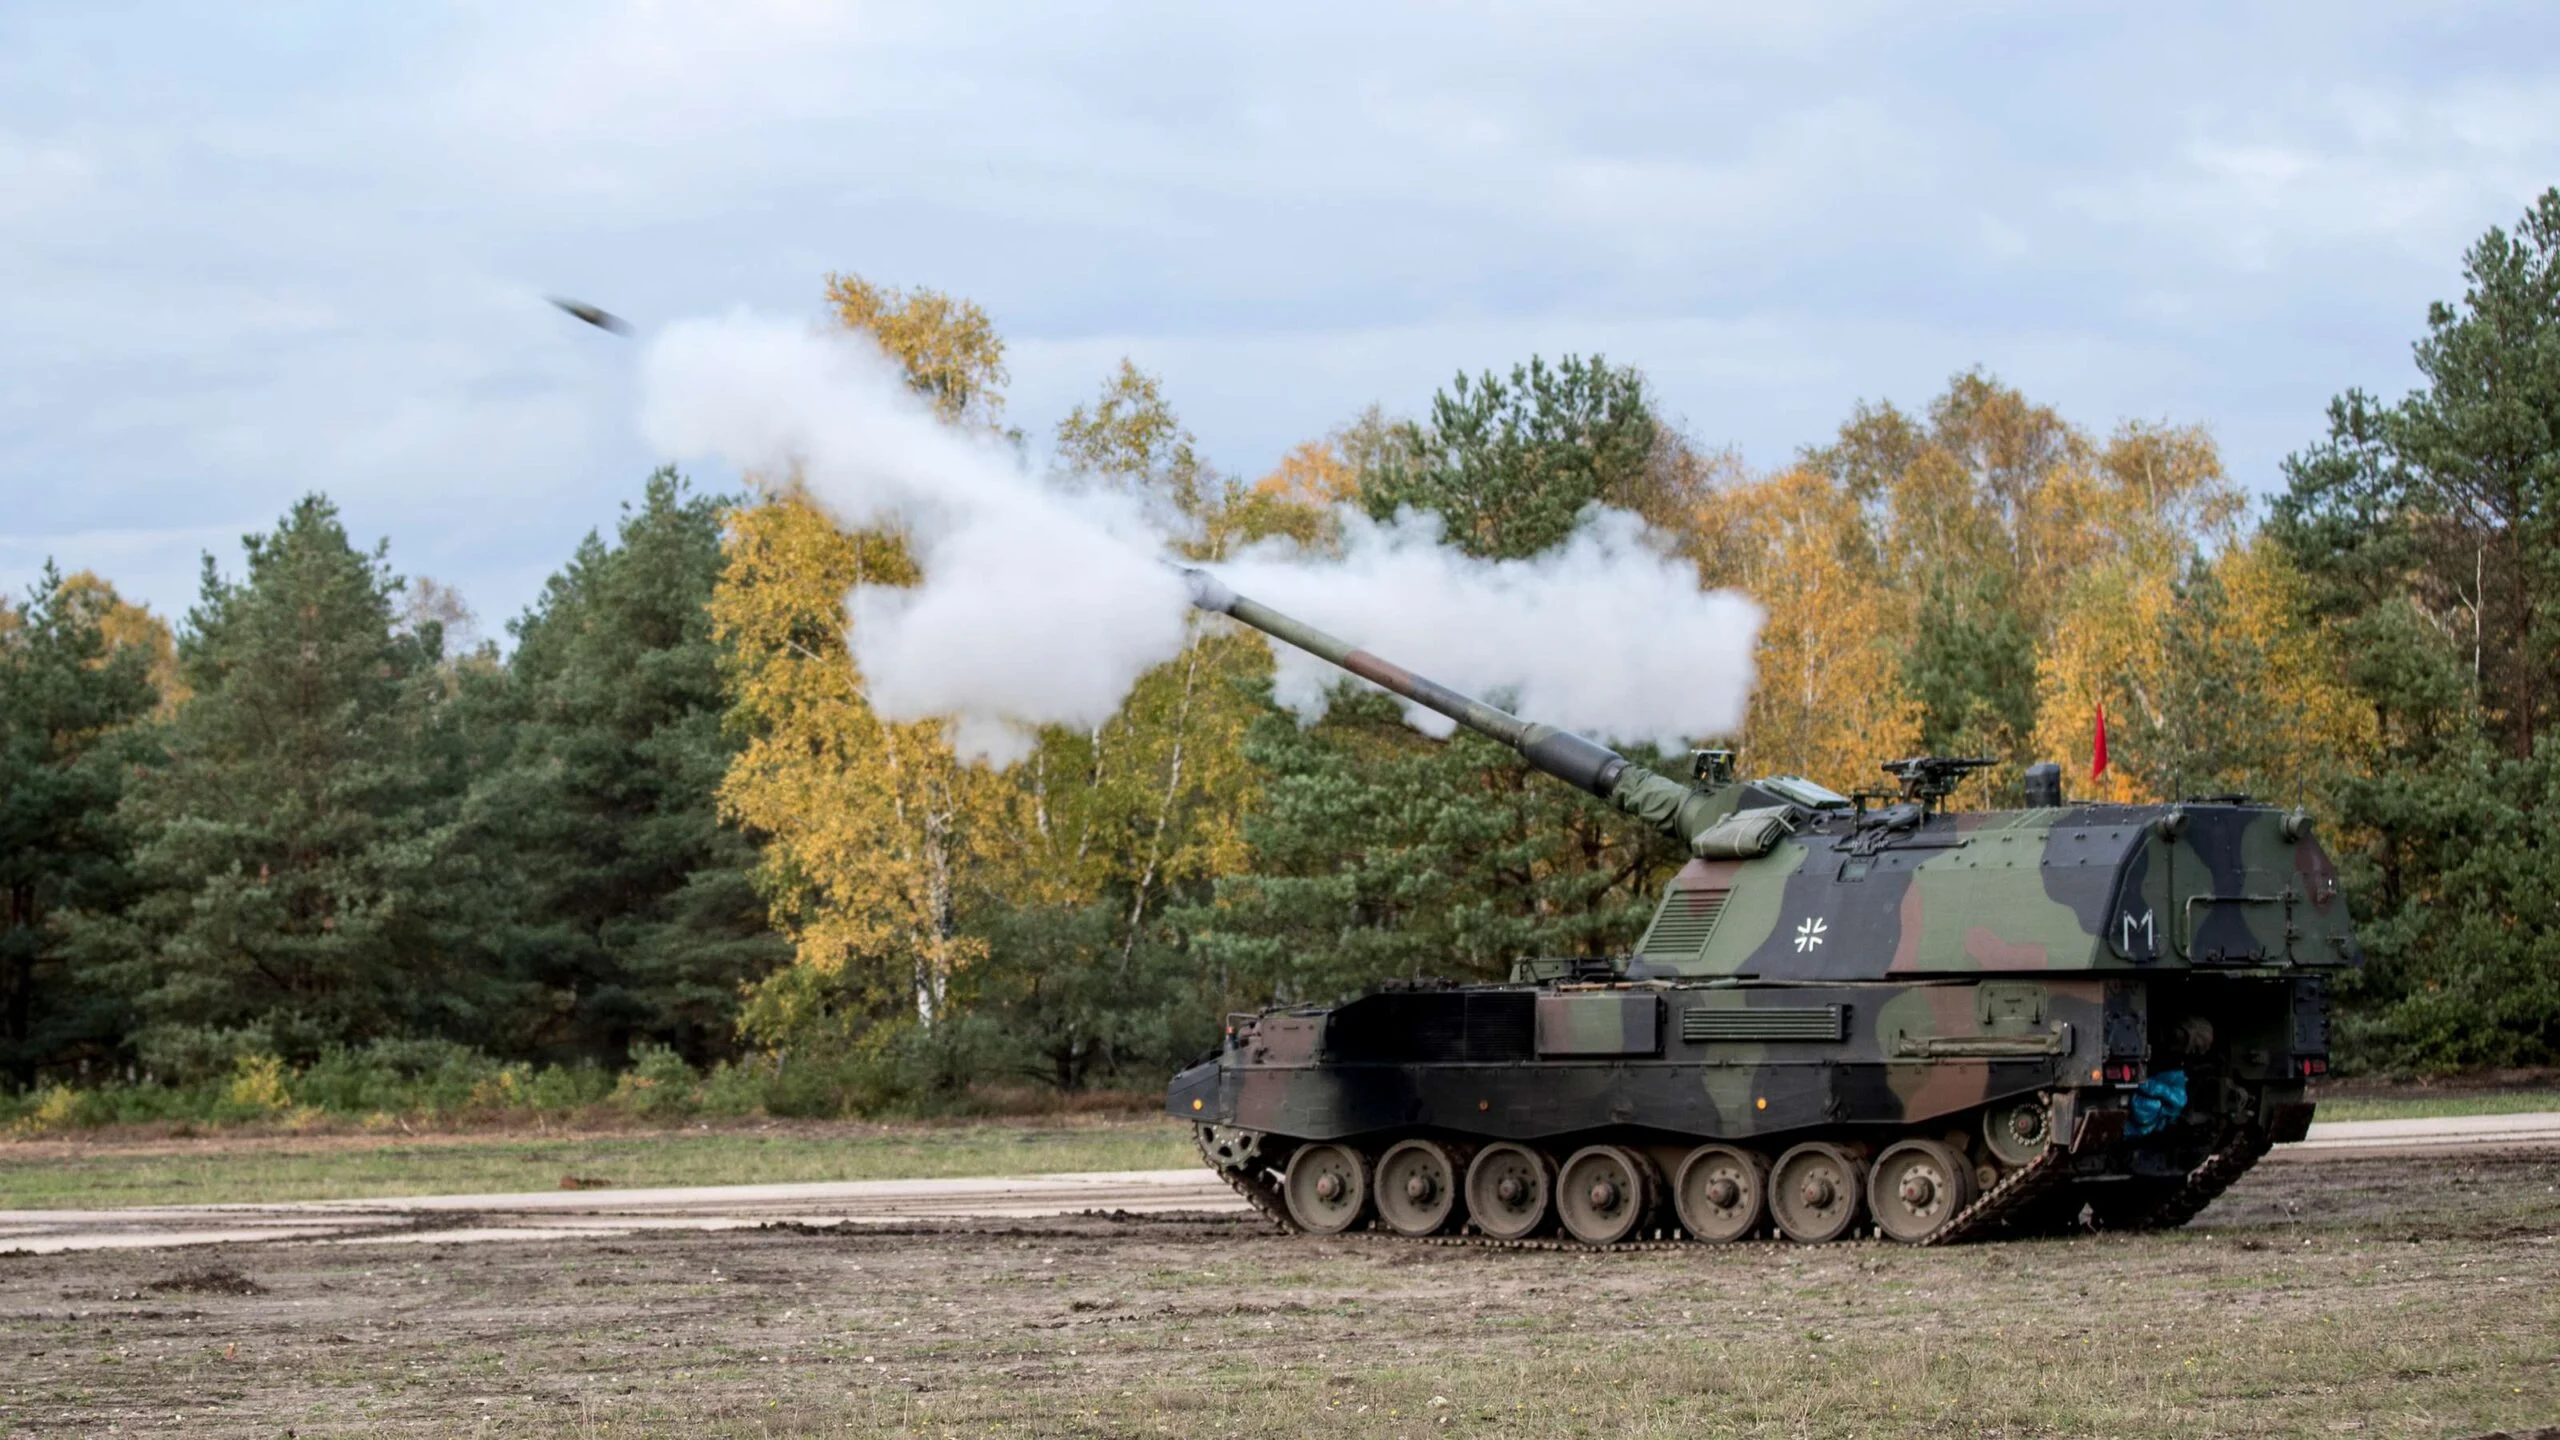 Германия отправит в Украину новую партию артиллерийских установок Panzerhaubitze 2000  их называют одними из лучших 155-мм гаубиц в мире